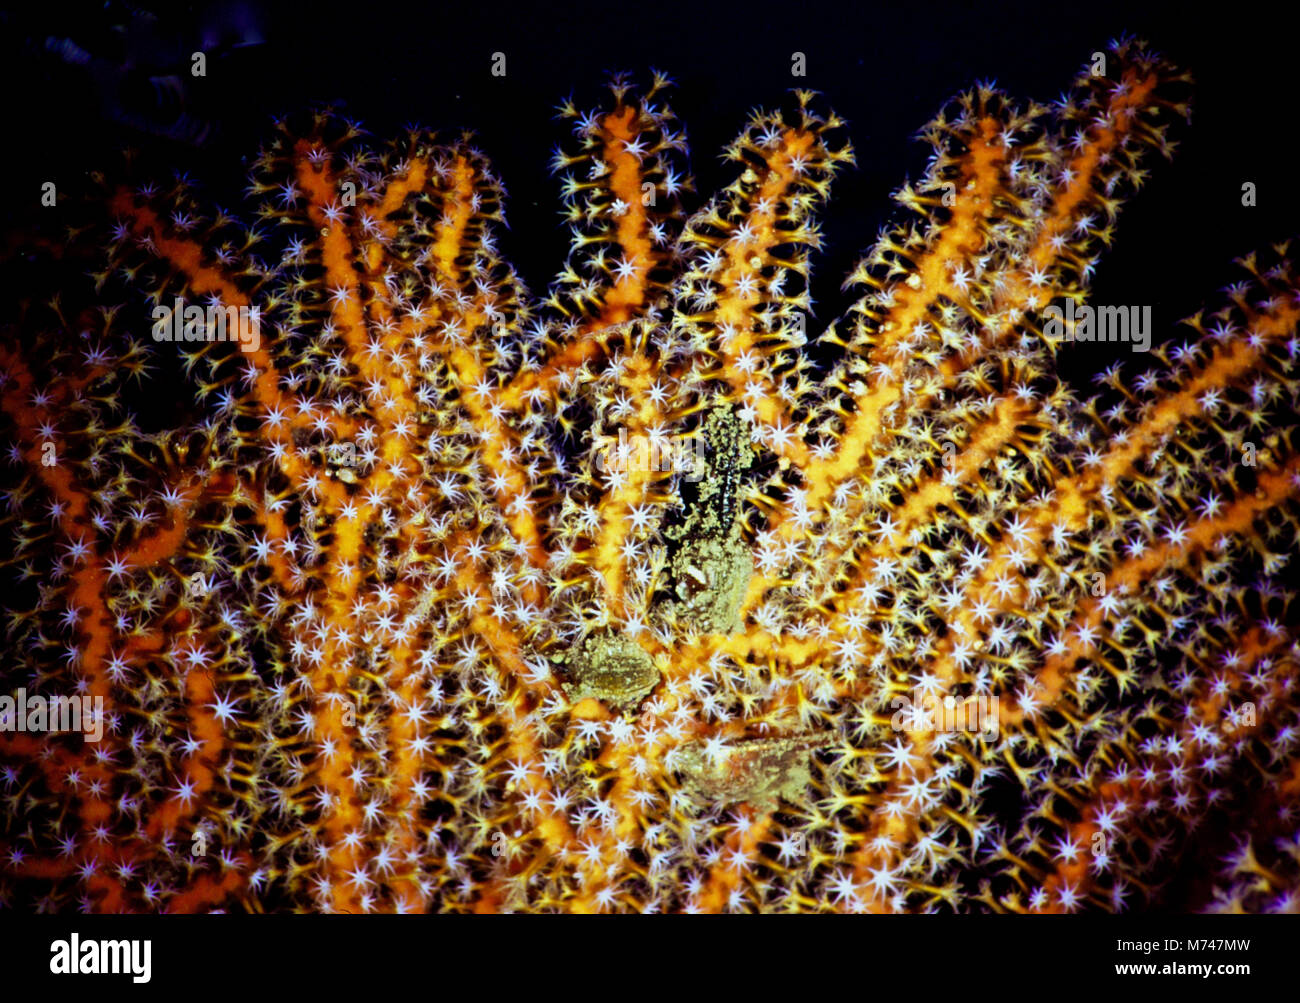 Eine Gorgonie fan Coral (Acabaria splendens), mit seinen vielen 8-tentacled Polypen erweitert zu fangen micro Weitergabe Plankton. Diese Kolonien von kleinen zarten Tiere, Leben in ihren bunten kommunale Skelette, dienen die Zerbrechlichkeit und die Schönheit der tropischen und sub-tropischen Korallenriffen zu illustrieren. Sehr traurig, wie Riffe sterben; über ein Viertel in Schutt und Asche gelegt worden, während der letzten 20 Jahre verringert. Dieser Trend wird sich fortsetzen. Sie sind die schwächsten der Ökosysteme unseres Planeten, da sie sehr begrenzten Kapazitäten an steigende Temperaturen und Versauerung anzupassen haben. Ägyptischen Roten Meer. Stockfoto